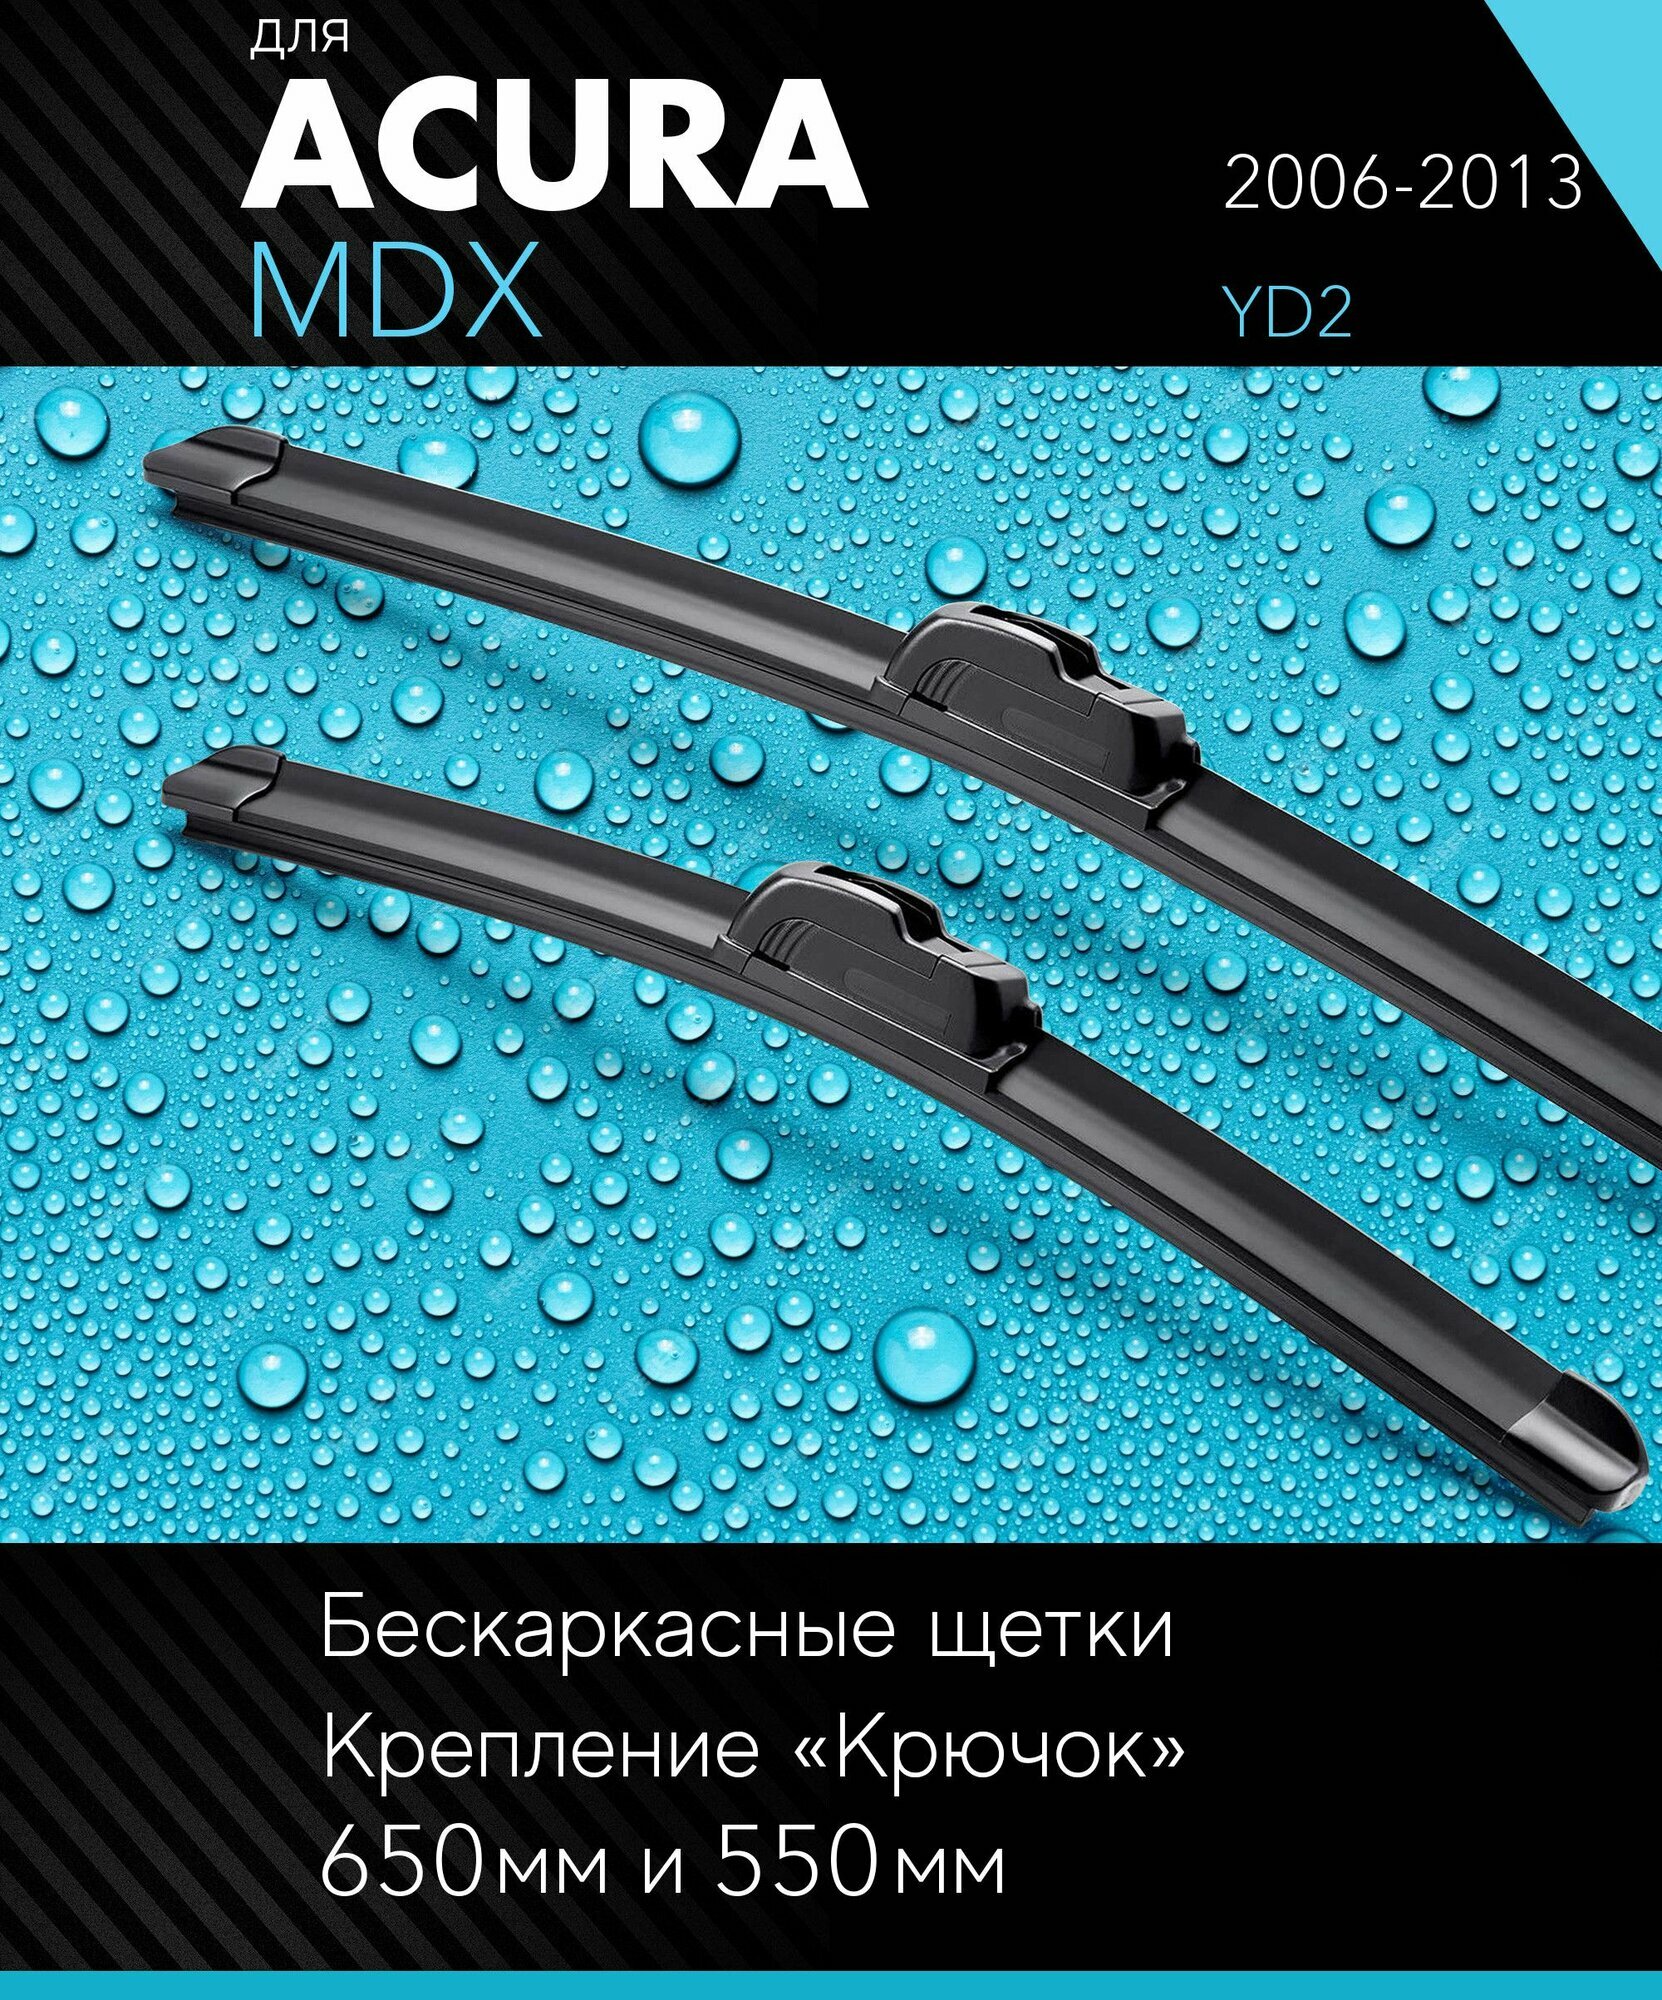 2 щетки стеклоочистителя 650 530 мм на Акура МДХ 2006-2013 бескаркасные дворники комплект для Acura MDX (YD2) - Autoled